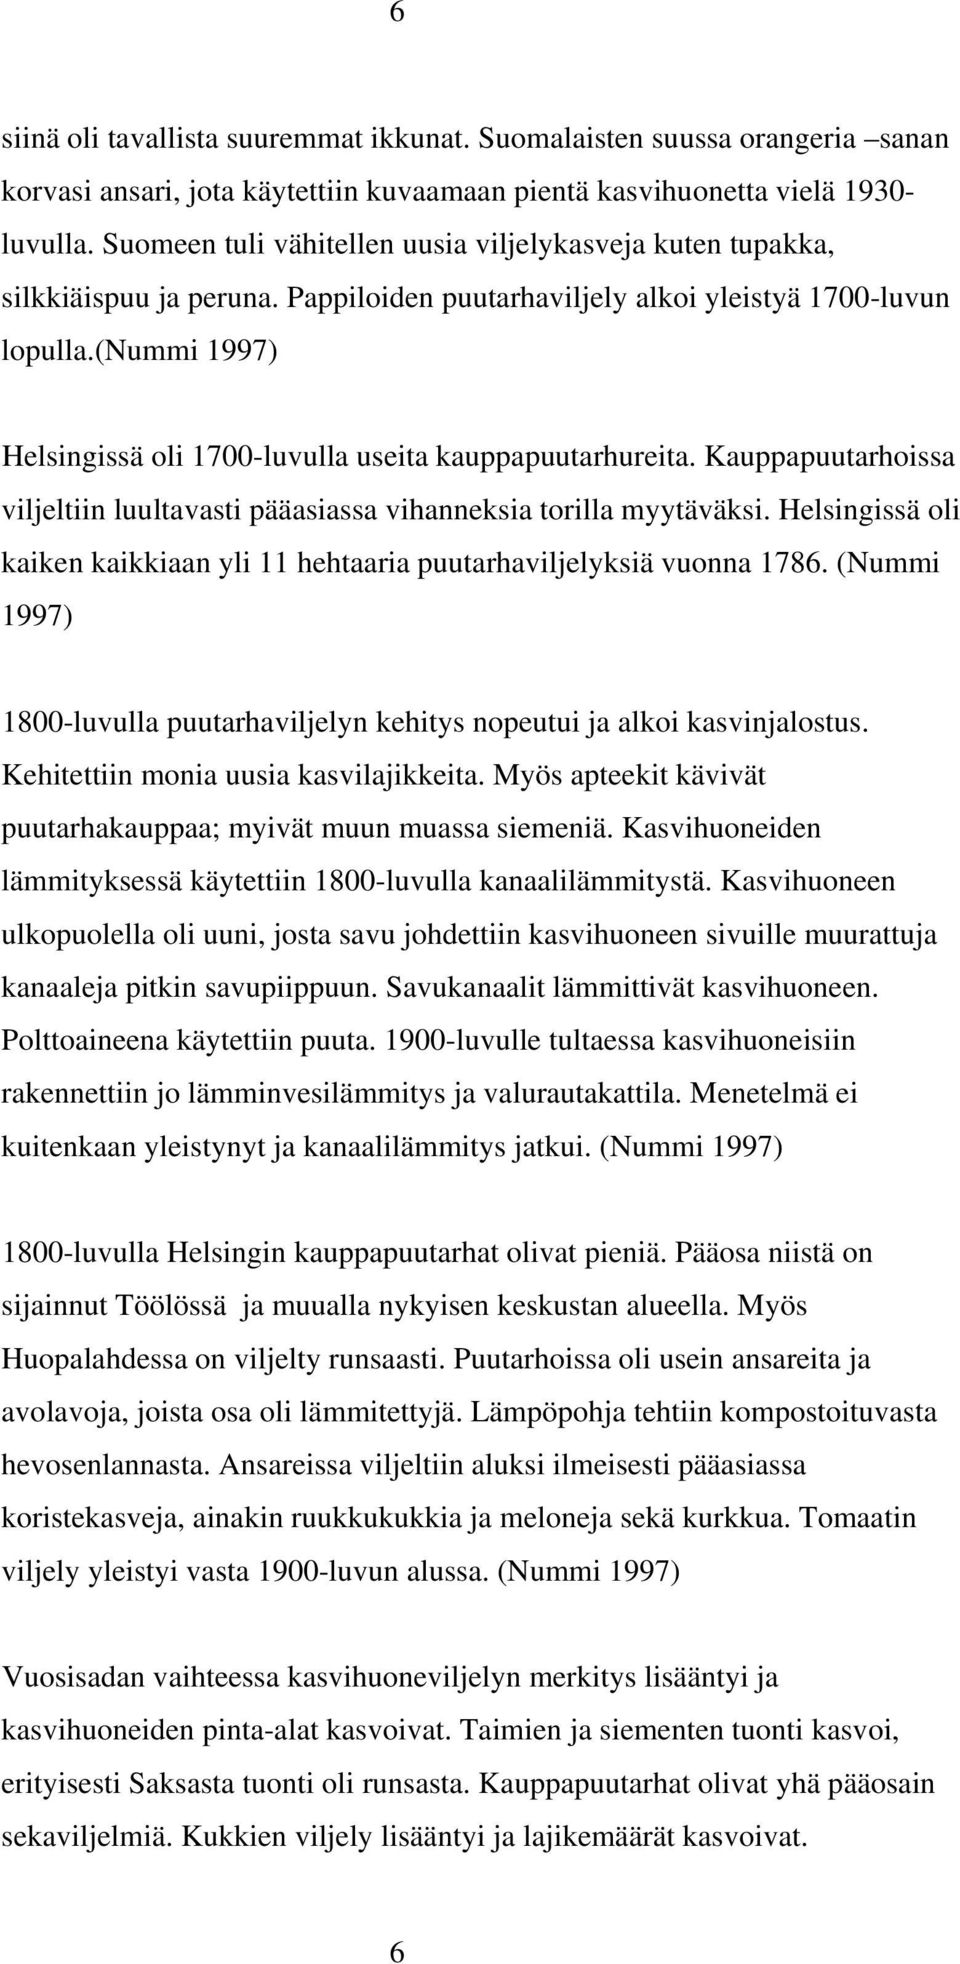 (nummi 1997) Helsingissä oli 1700-luvulla useita kauppapuutarhureita. Kauppapuutarhoissa viljeltiin luultavasti pääasiassa vihanneksia torilla myytäväksi.